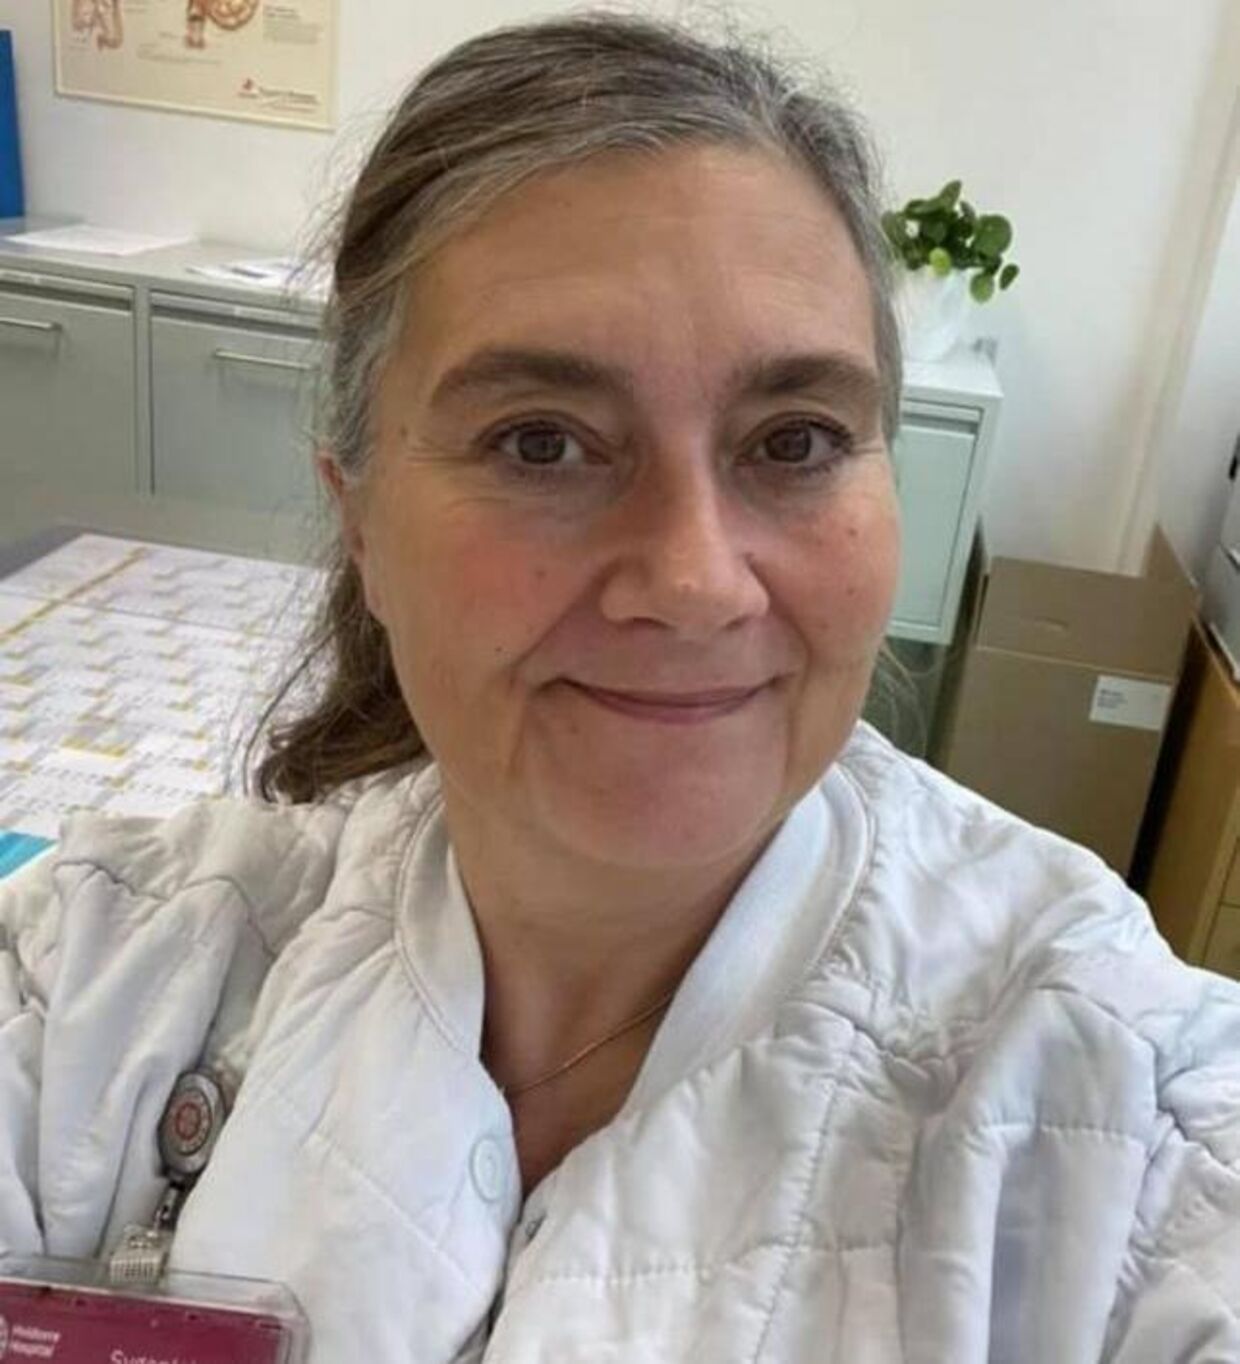 53-årige Marianne Priskorn er sygeplejerske i Region Hovedstaden og er ikke en del af de 30 procent, der får et tillæg. Det synes hun, ikke er fair. Og hun frygter, at prioriteringen kommer til at give bagslag.